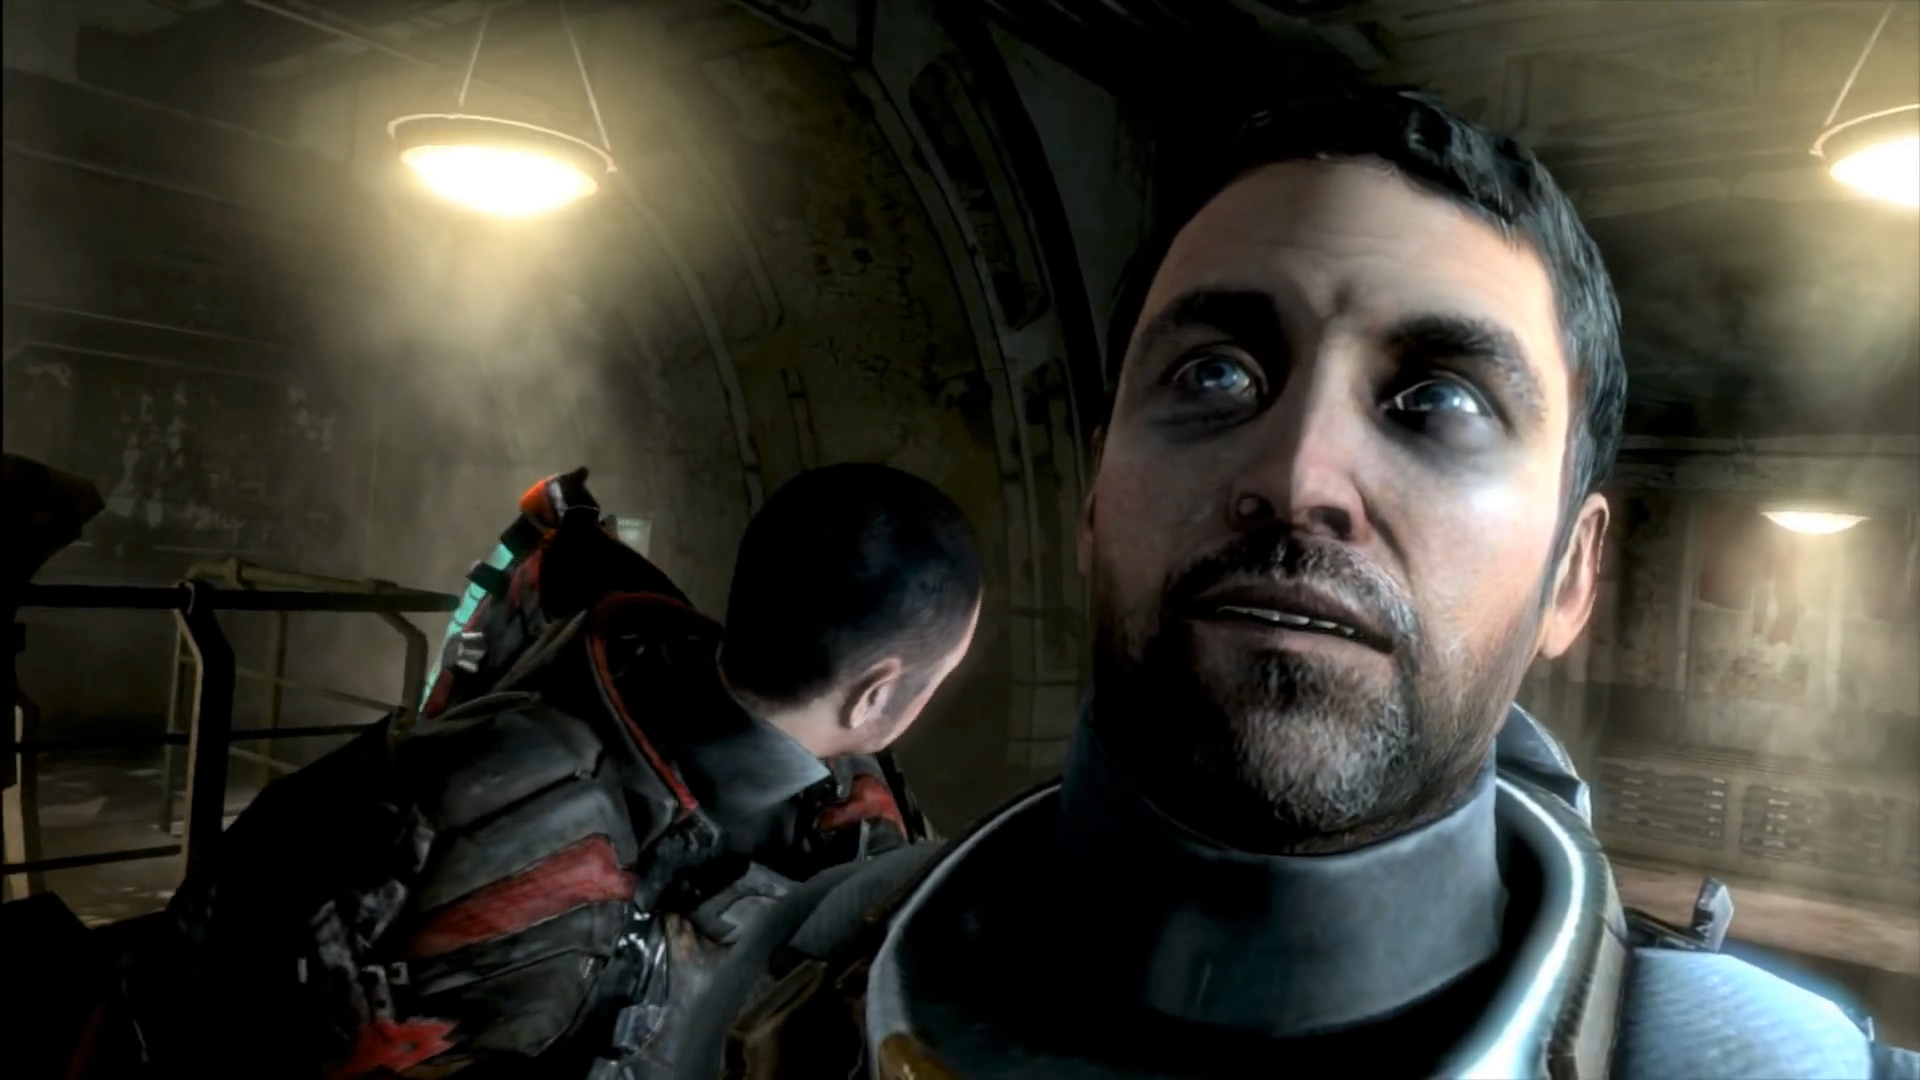 Bilder zu Gerücht: EA Motive könnte Dead Space wieder neues Leben einhauchen